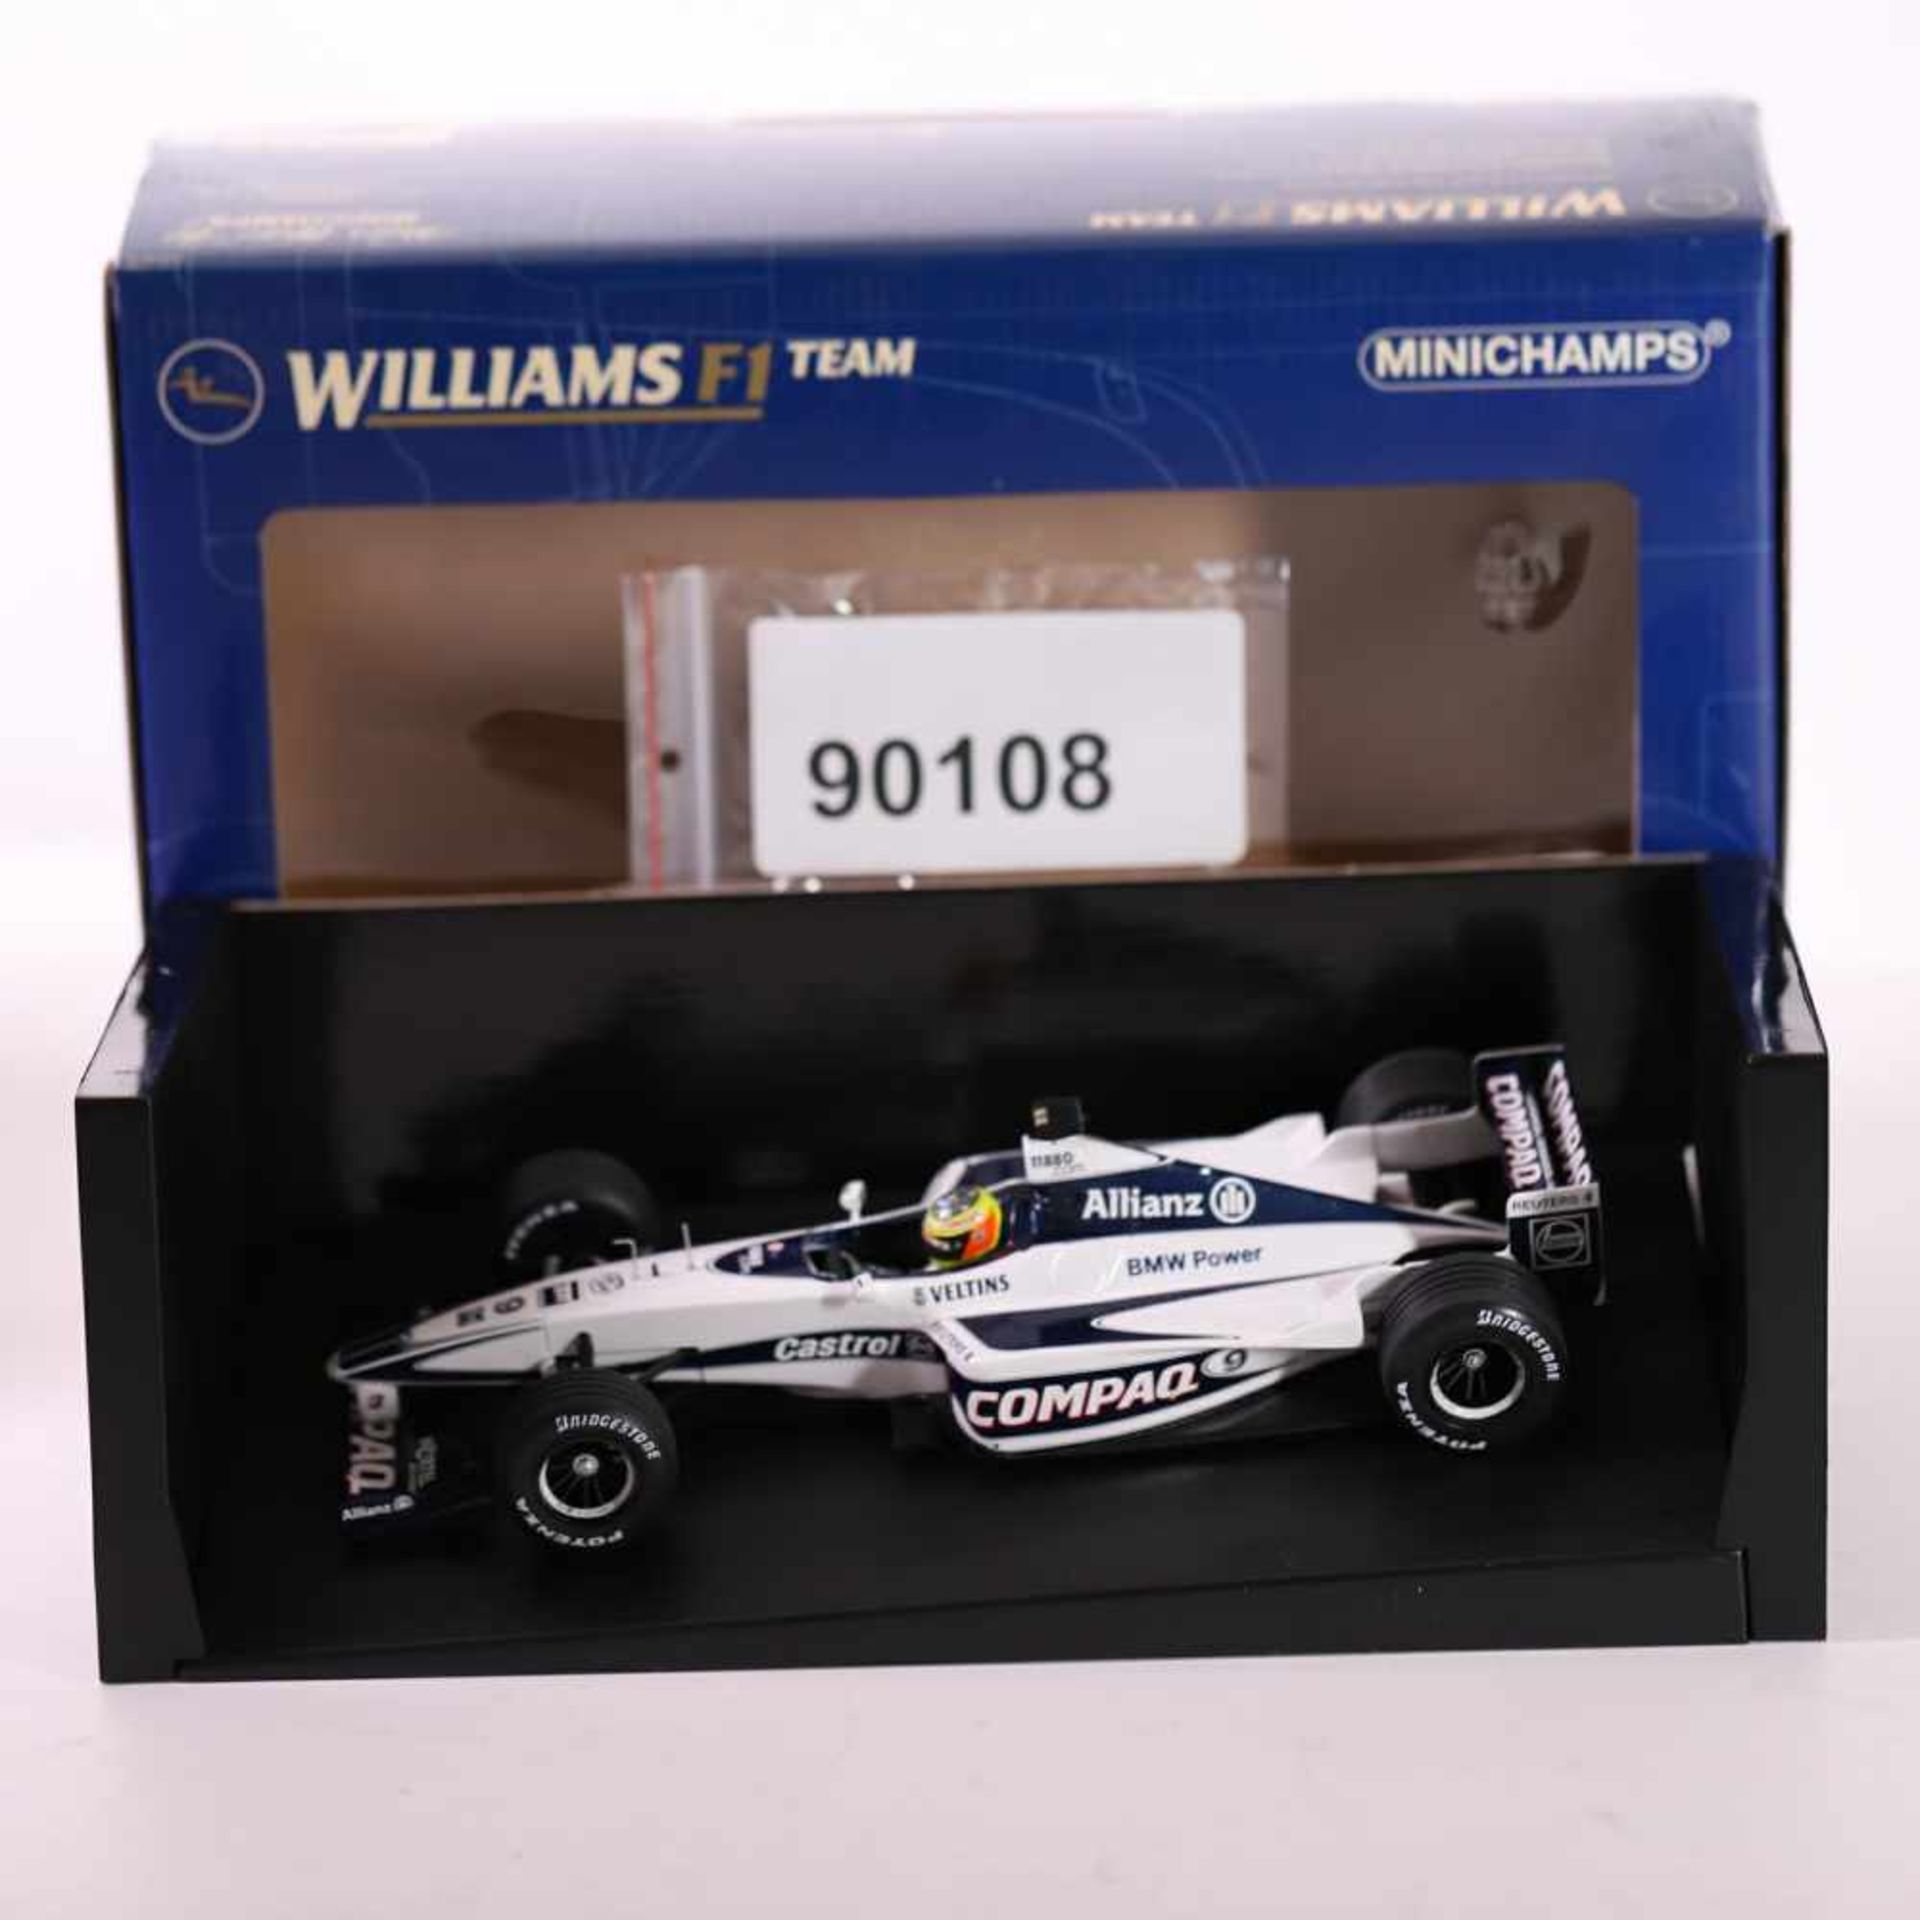 Minichamps 180 000009 Williams BMW FW 22, R. Schumacher, OVP, neuwertig,- - -20.00 % buyer's premium